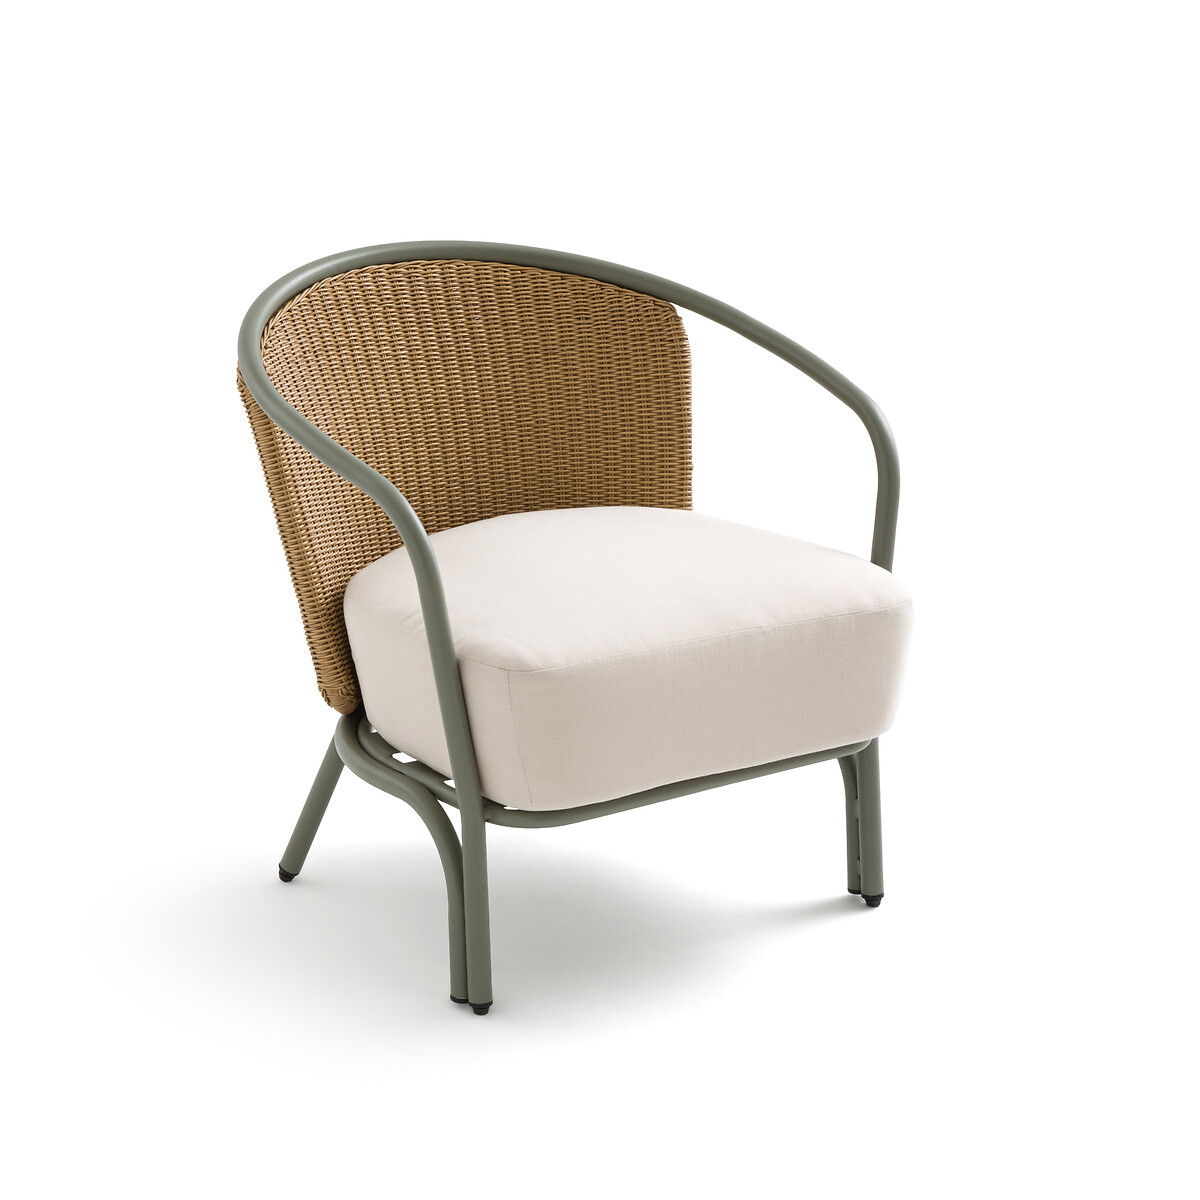 Кресло садовое из стали и полимера Joati единый размер зеленый